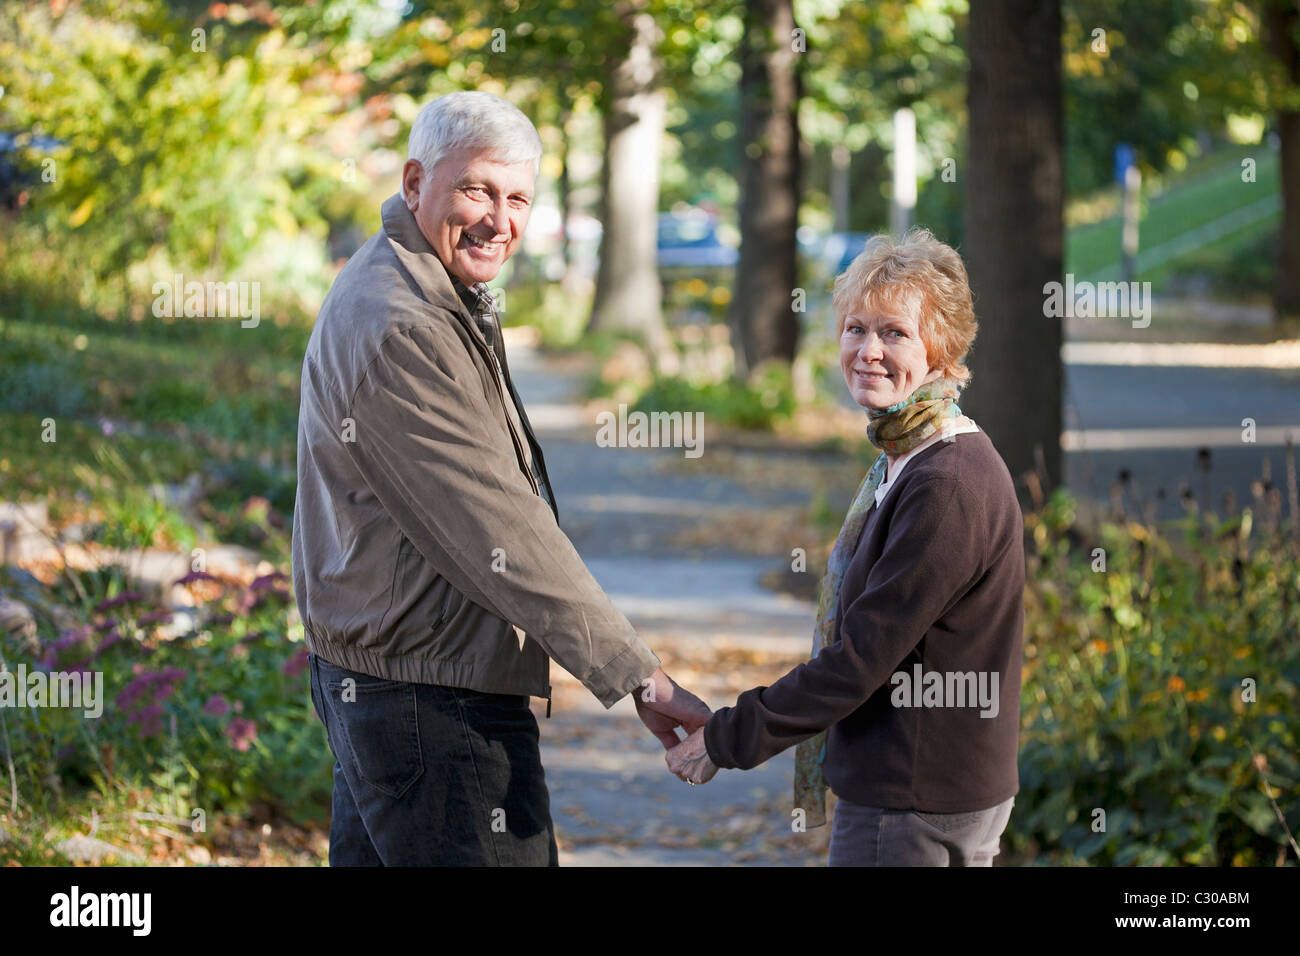 Älteres Paar zu Fuß auf dem Gehweg zurück in die Kamera schaut Stockfoto